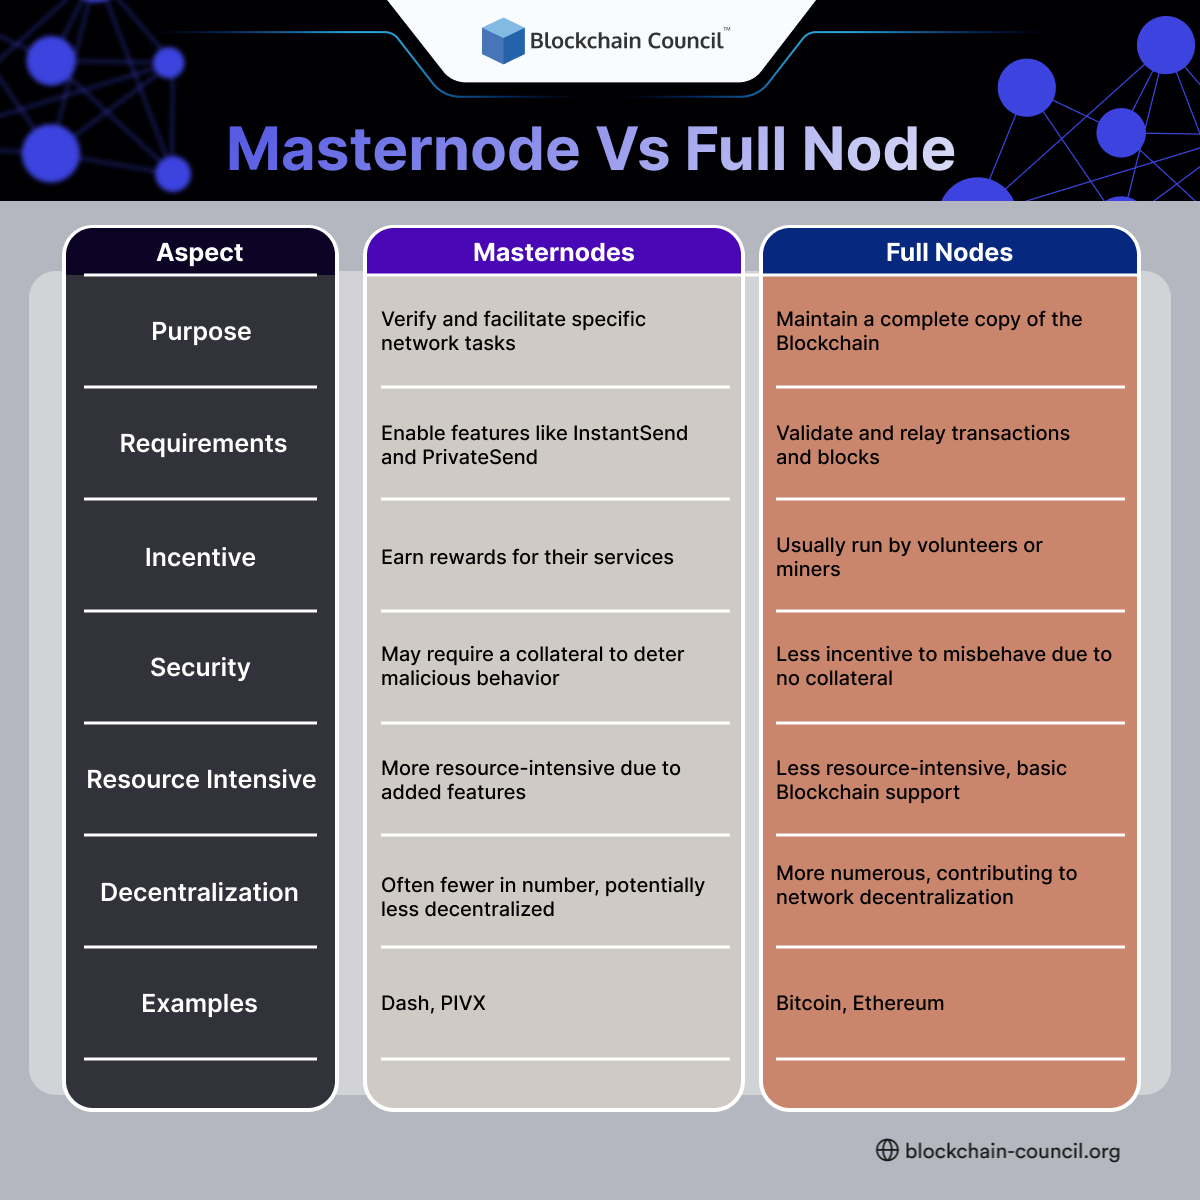 Masternode Vs. Full Node